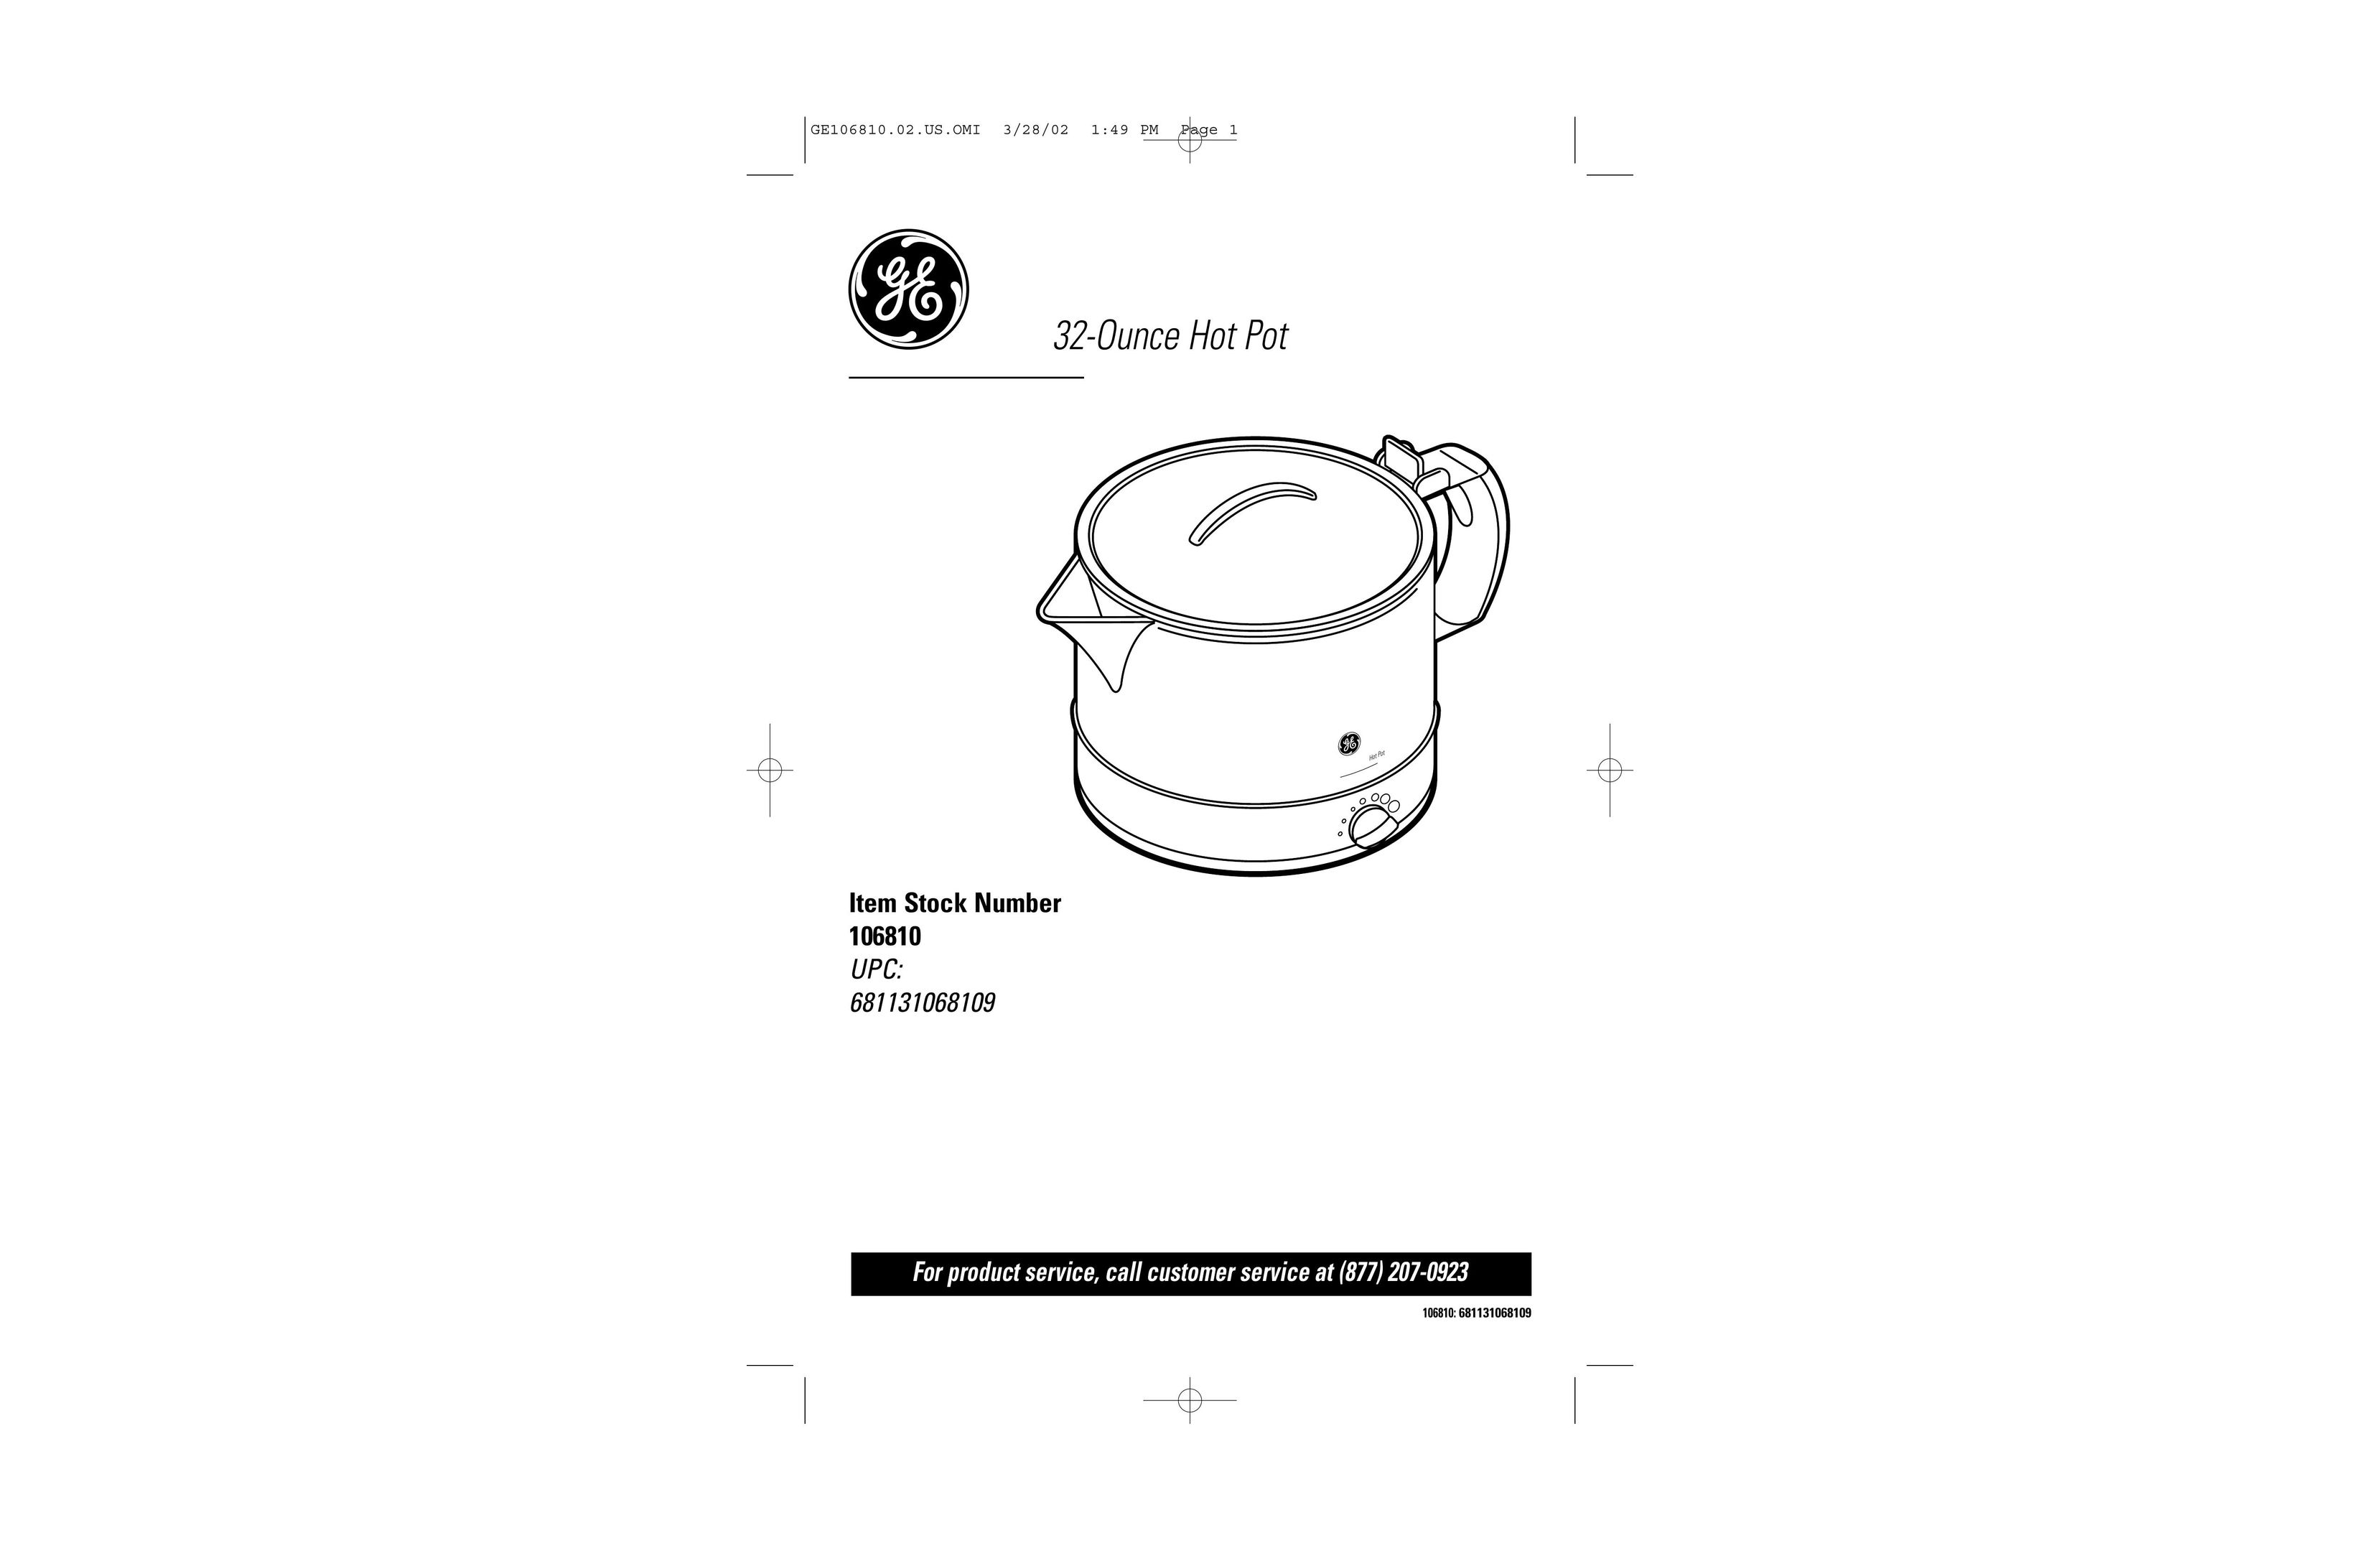 GE 681131068109 Hot Beverage Maker User Manual